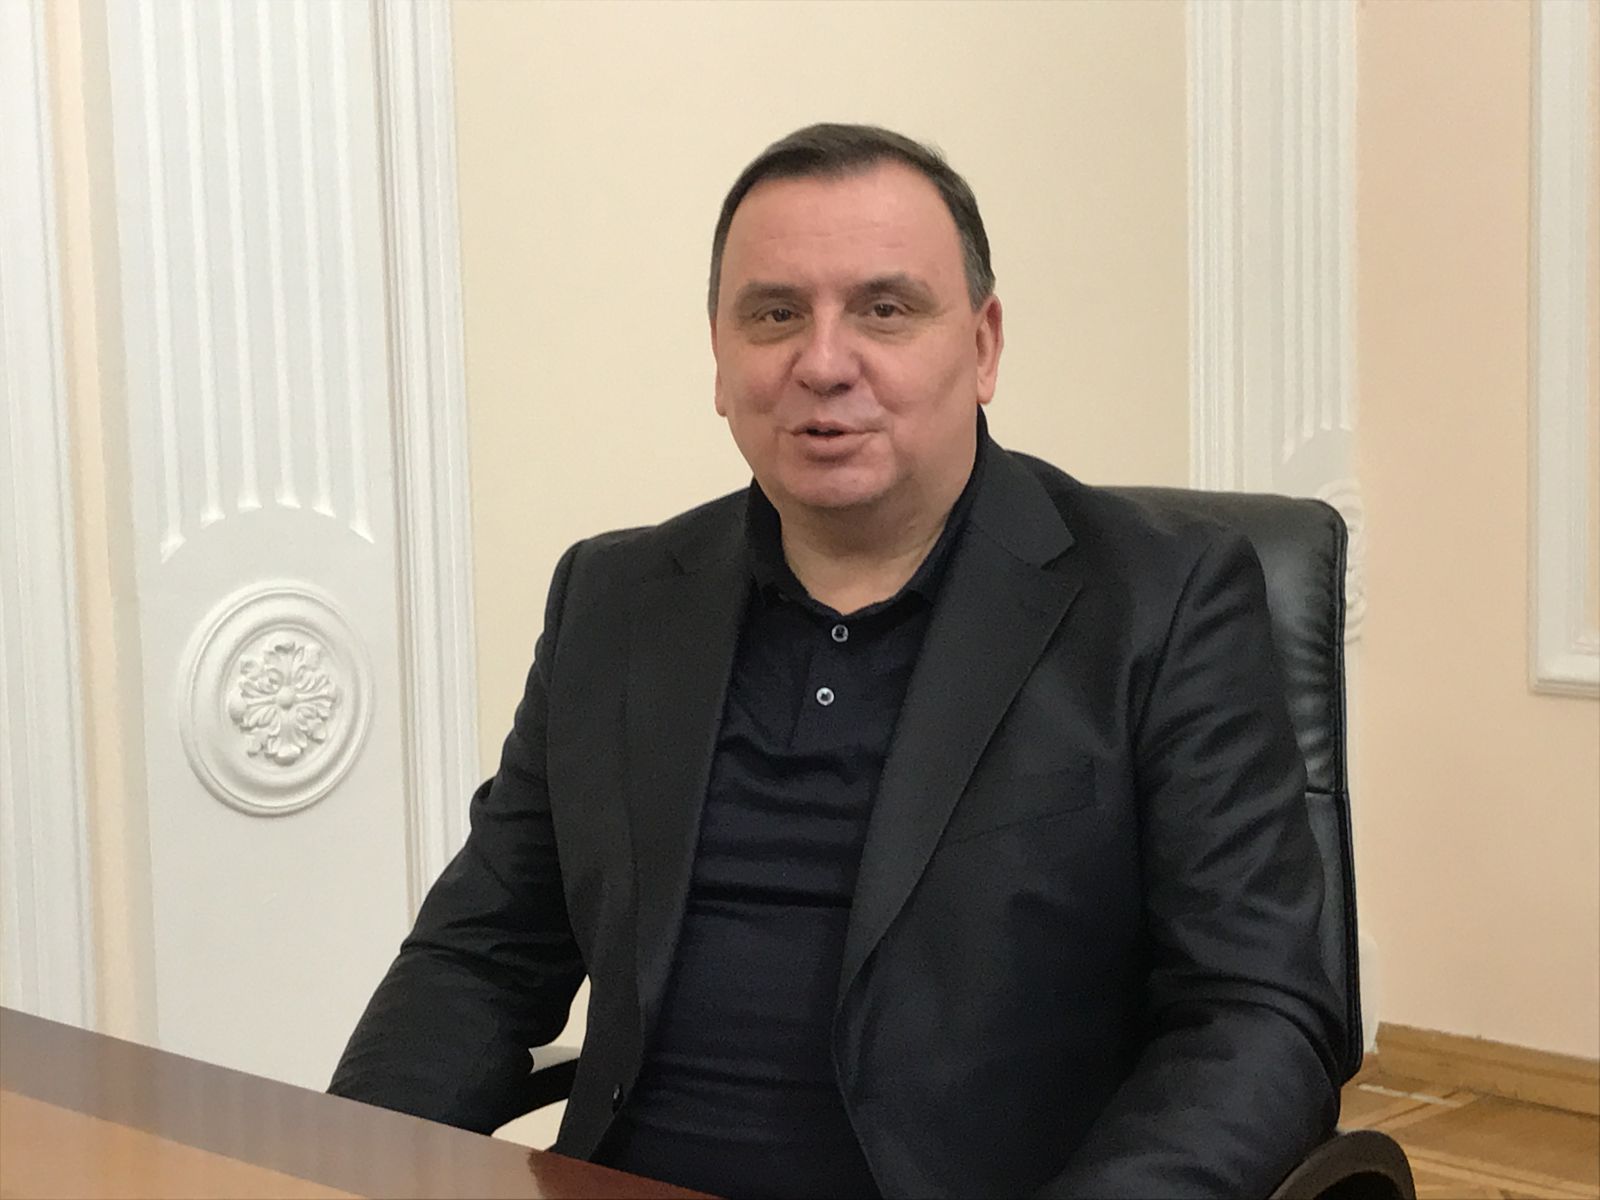 Станіслав КРАВЧЕНКО, голова Касаційного кримінального суду у складі Верховного суду